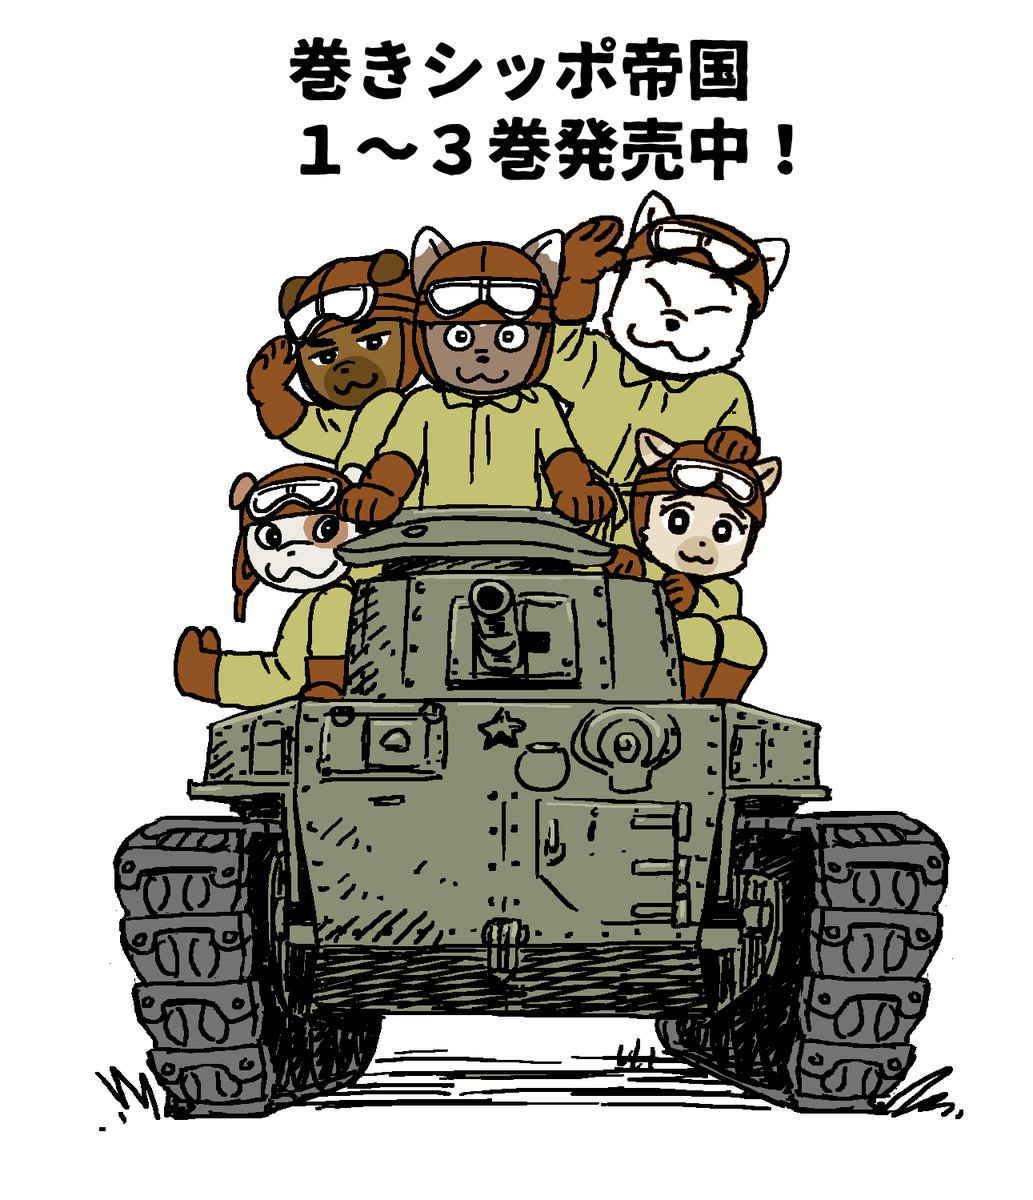 [定期ツイート]
犬の兵隊さんの漫画です。
巻きシッポ帝国 
 https://t.co/2DS42XF0mh 